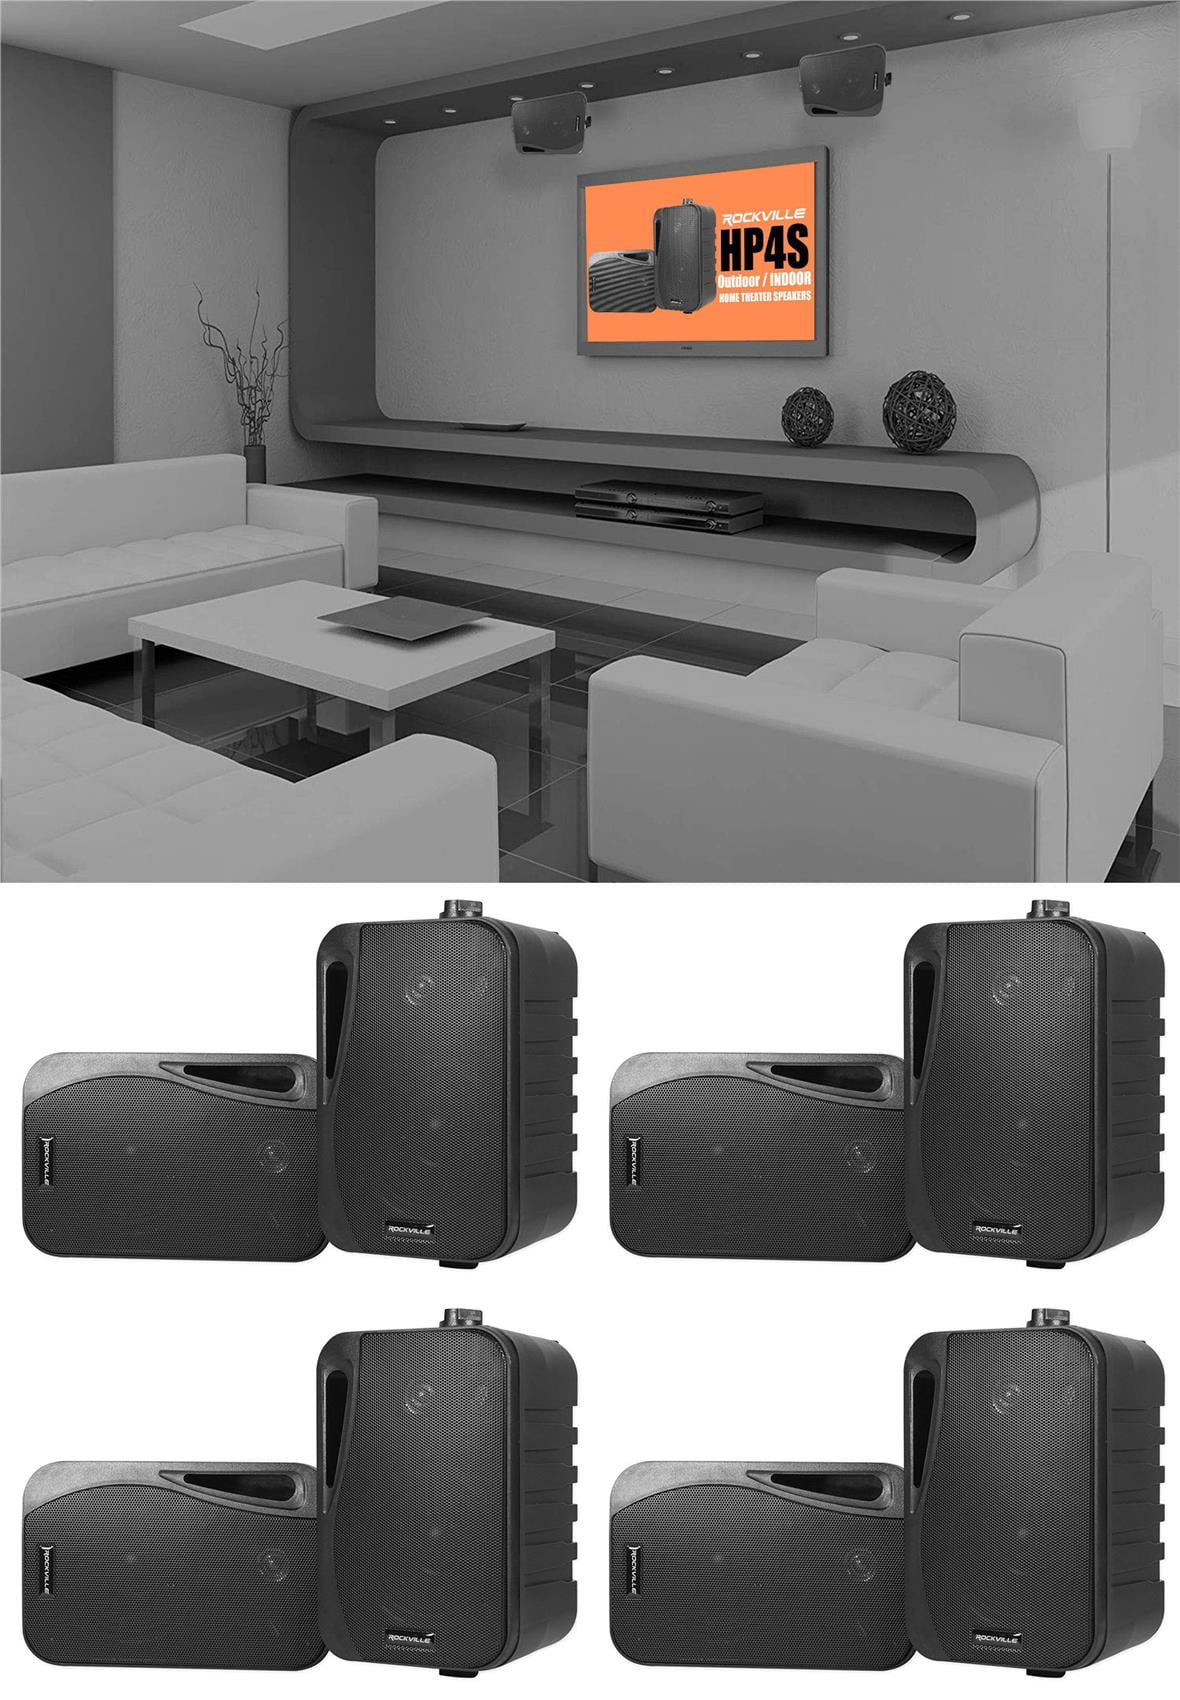 2 Rockville HP4S-8 BK 4 Outdoor/Indoor Swivel Home Theater Speakers in Black 4 inch 8 Ohm 